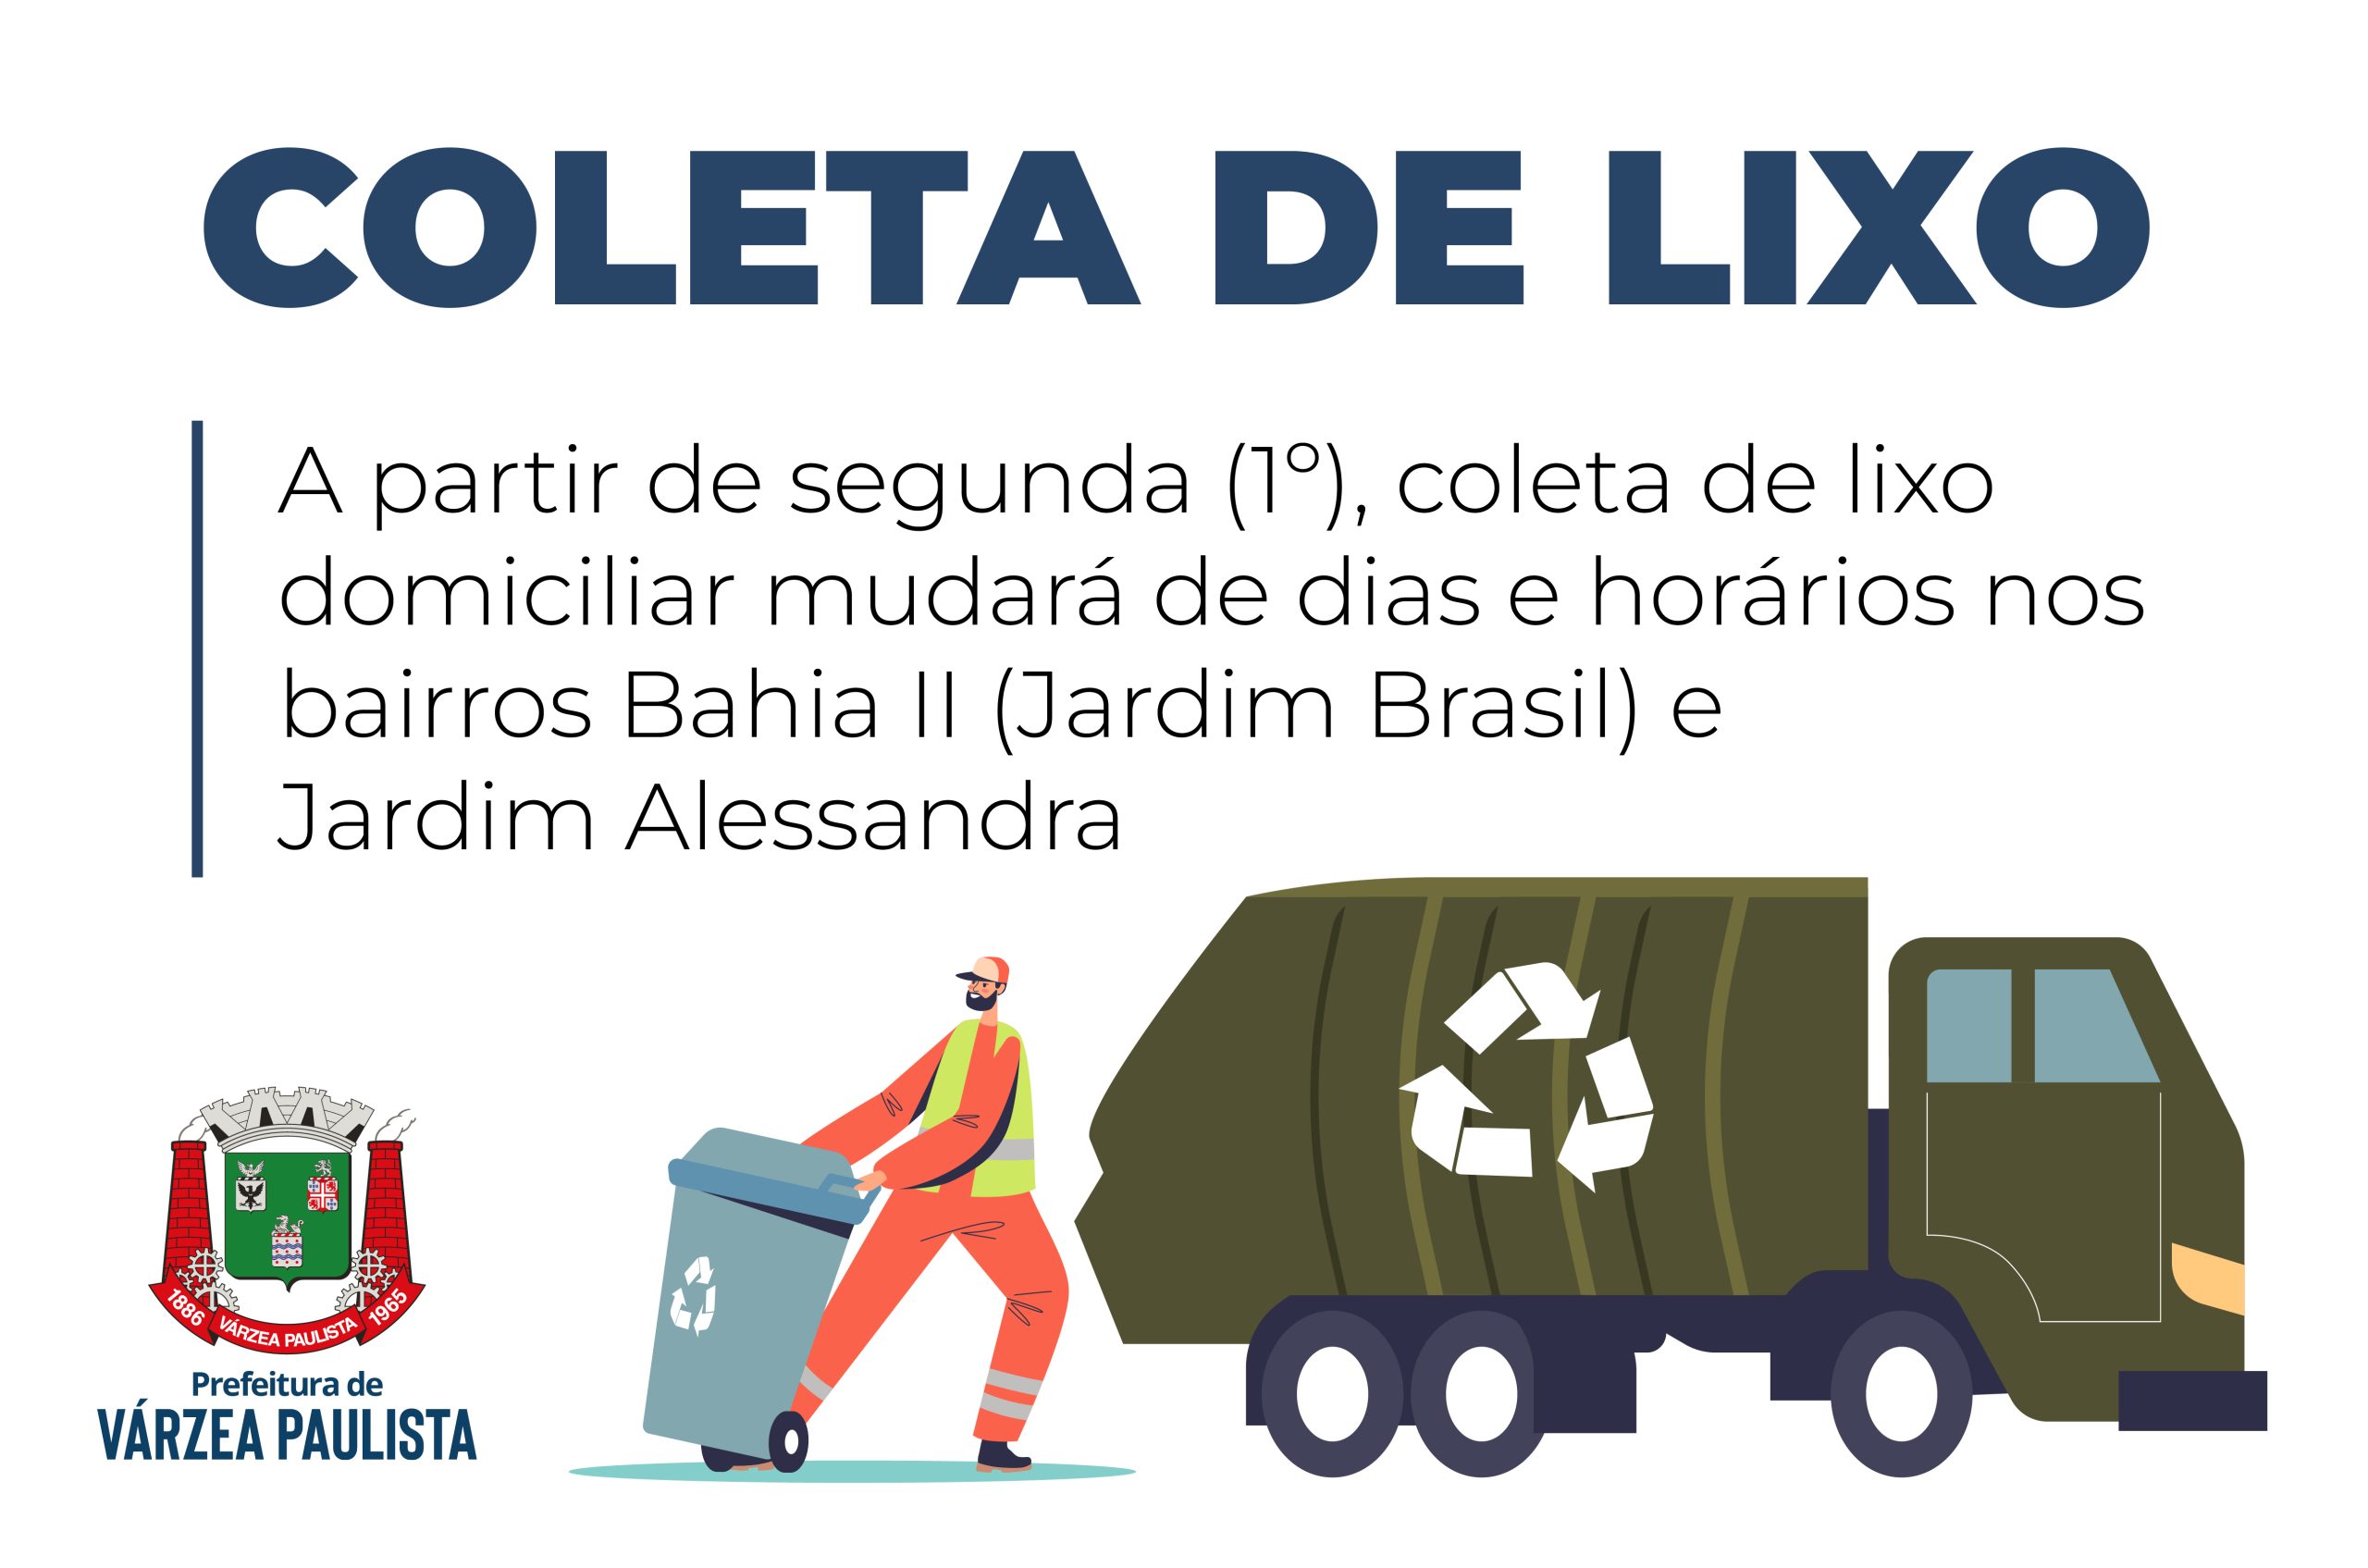 A partir de segunda (1º), coleta de lixo domiciliar mudará de dias e horários nos bairros Bahia II e Jardim Alessandra